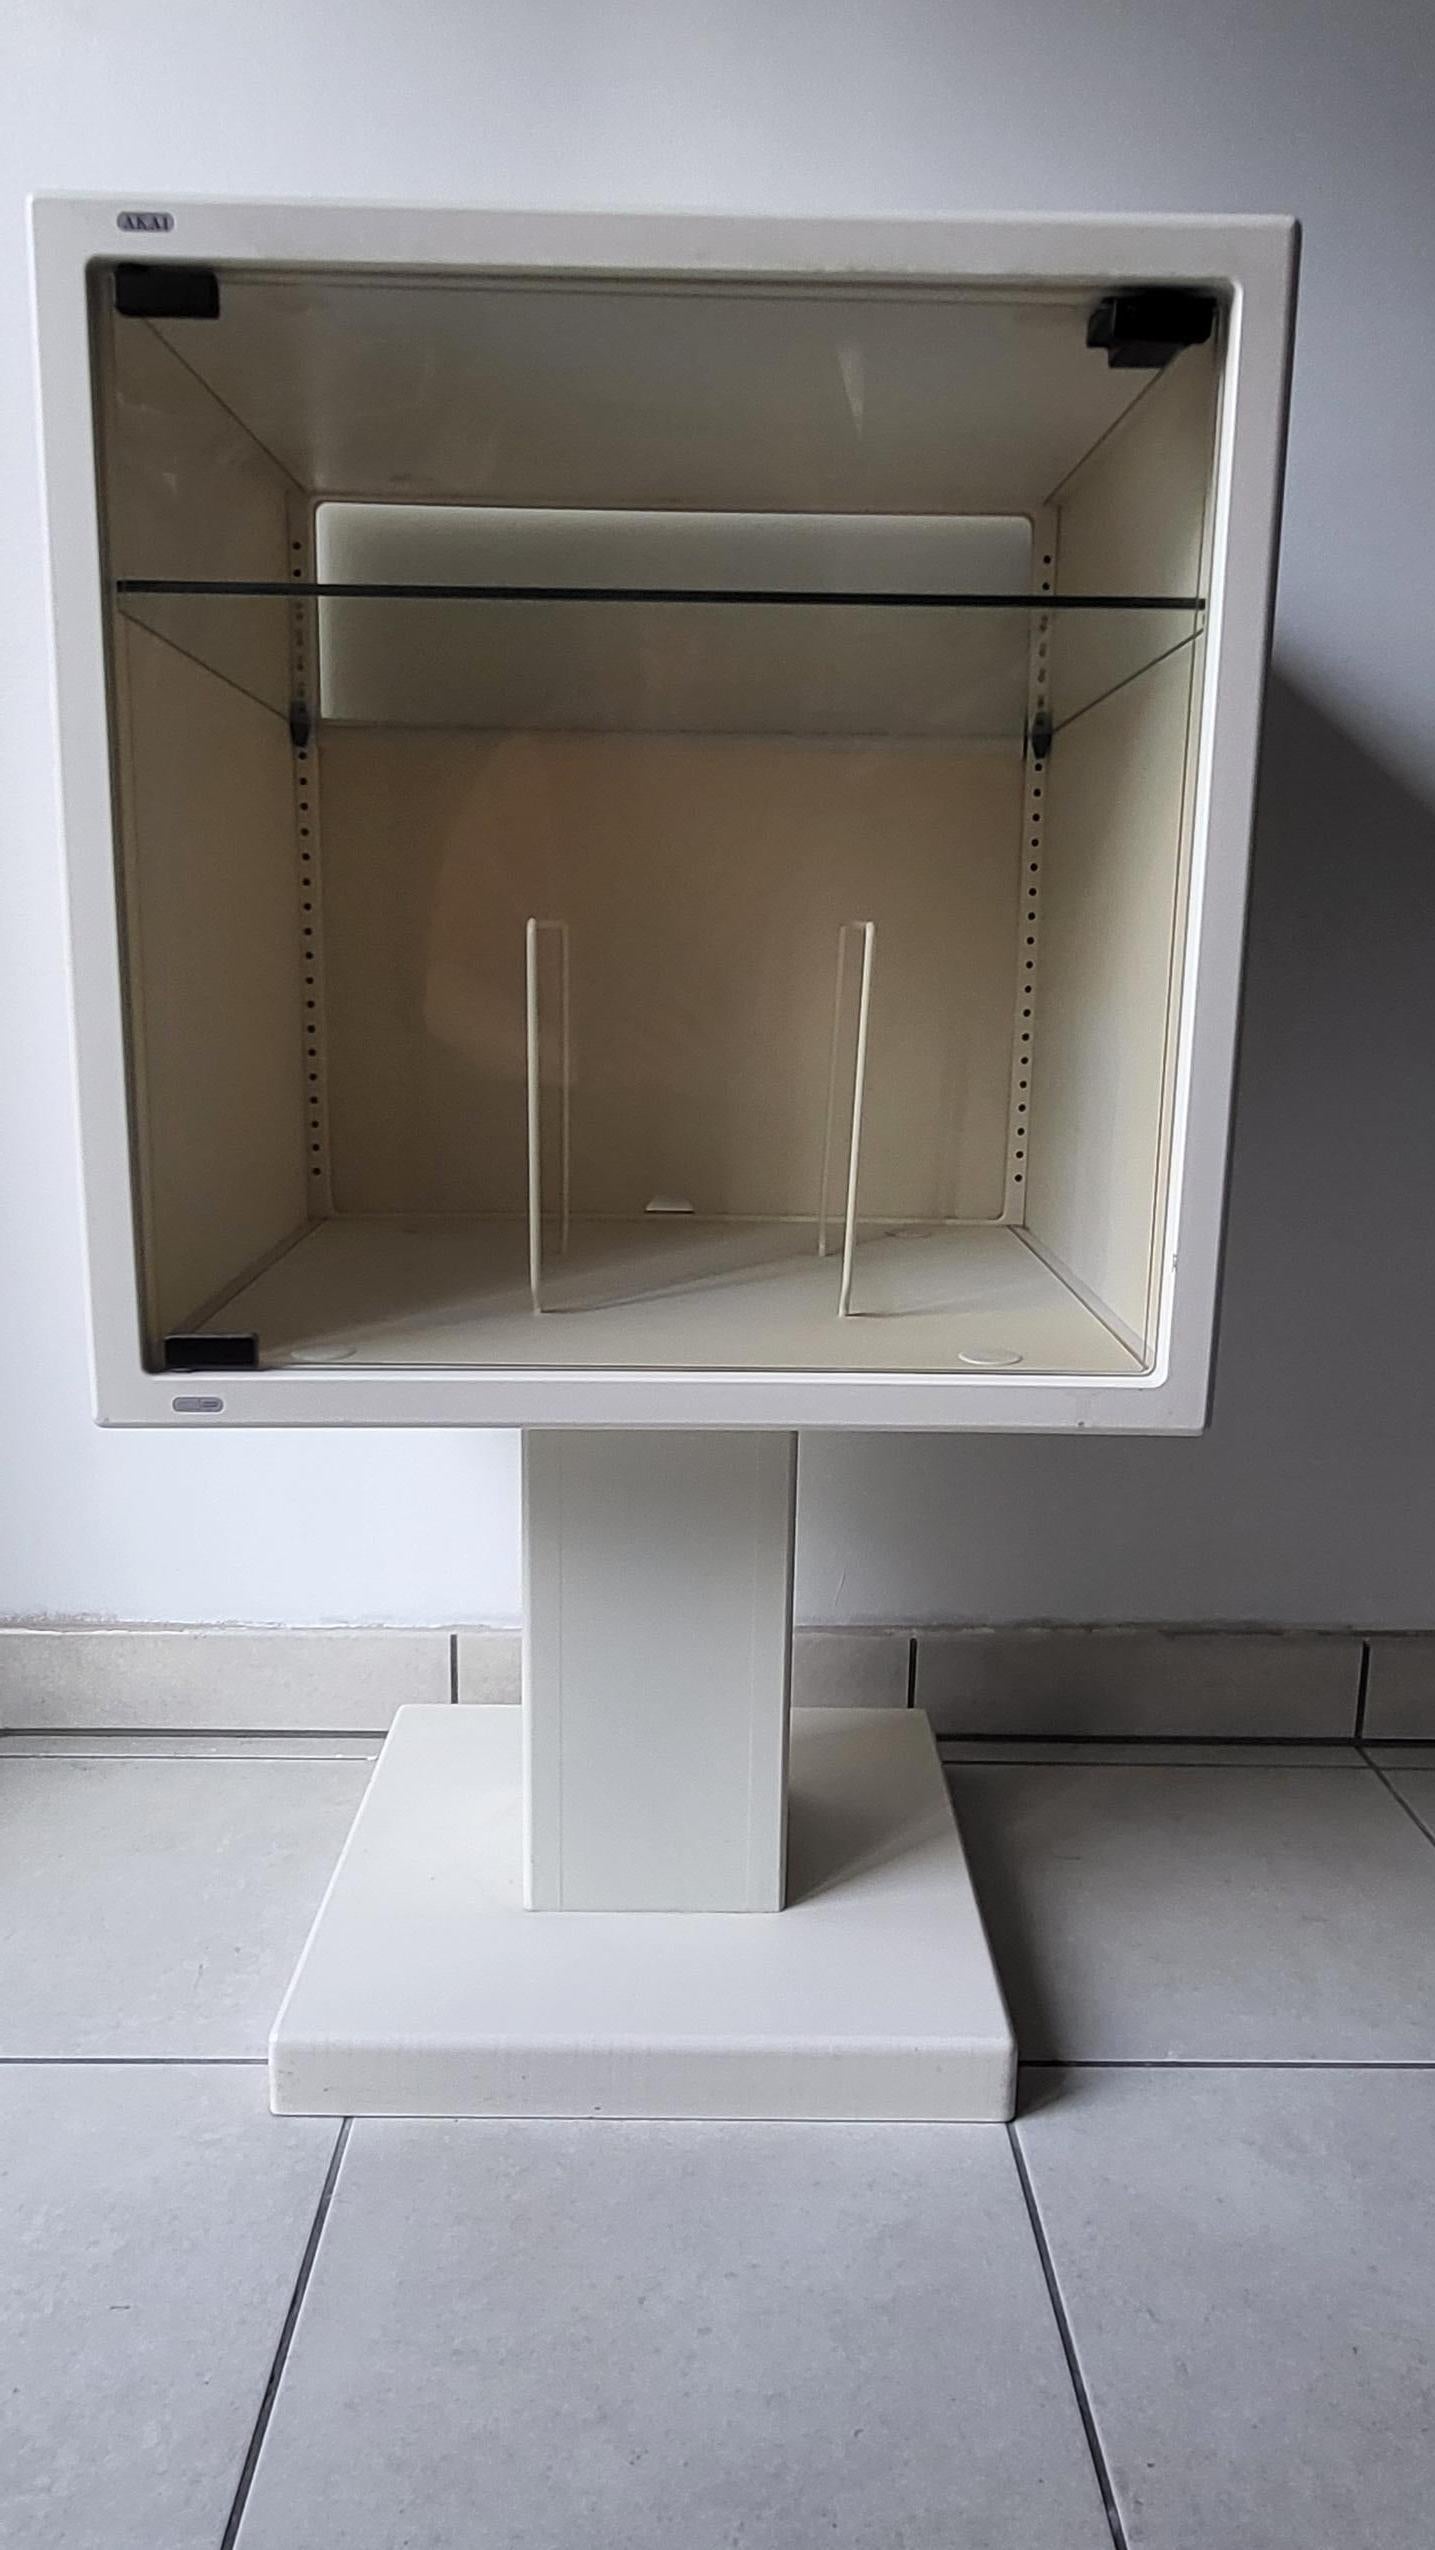 Meuble Hi-Fi AKAI CUBE de PB design. Fabriqué dans les années 1980, conçu avec une étagère à l'intérieur en verre qui sert de support pour la platine vinyle et le compartiment en dessous pour les disques.

Ces meubles sont rare et uniques, certains